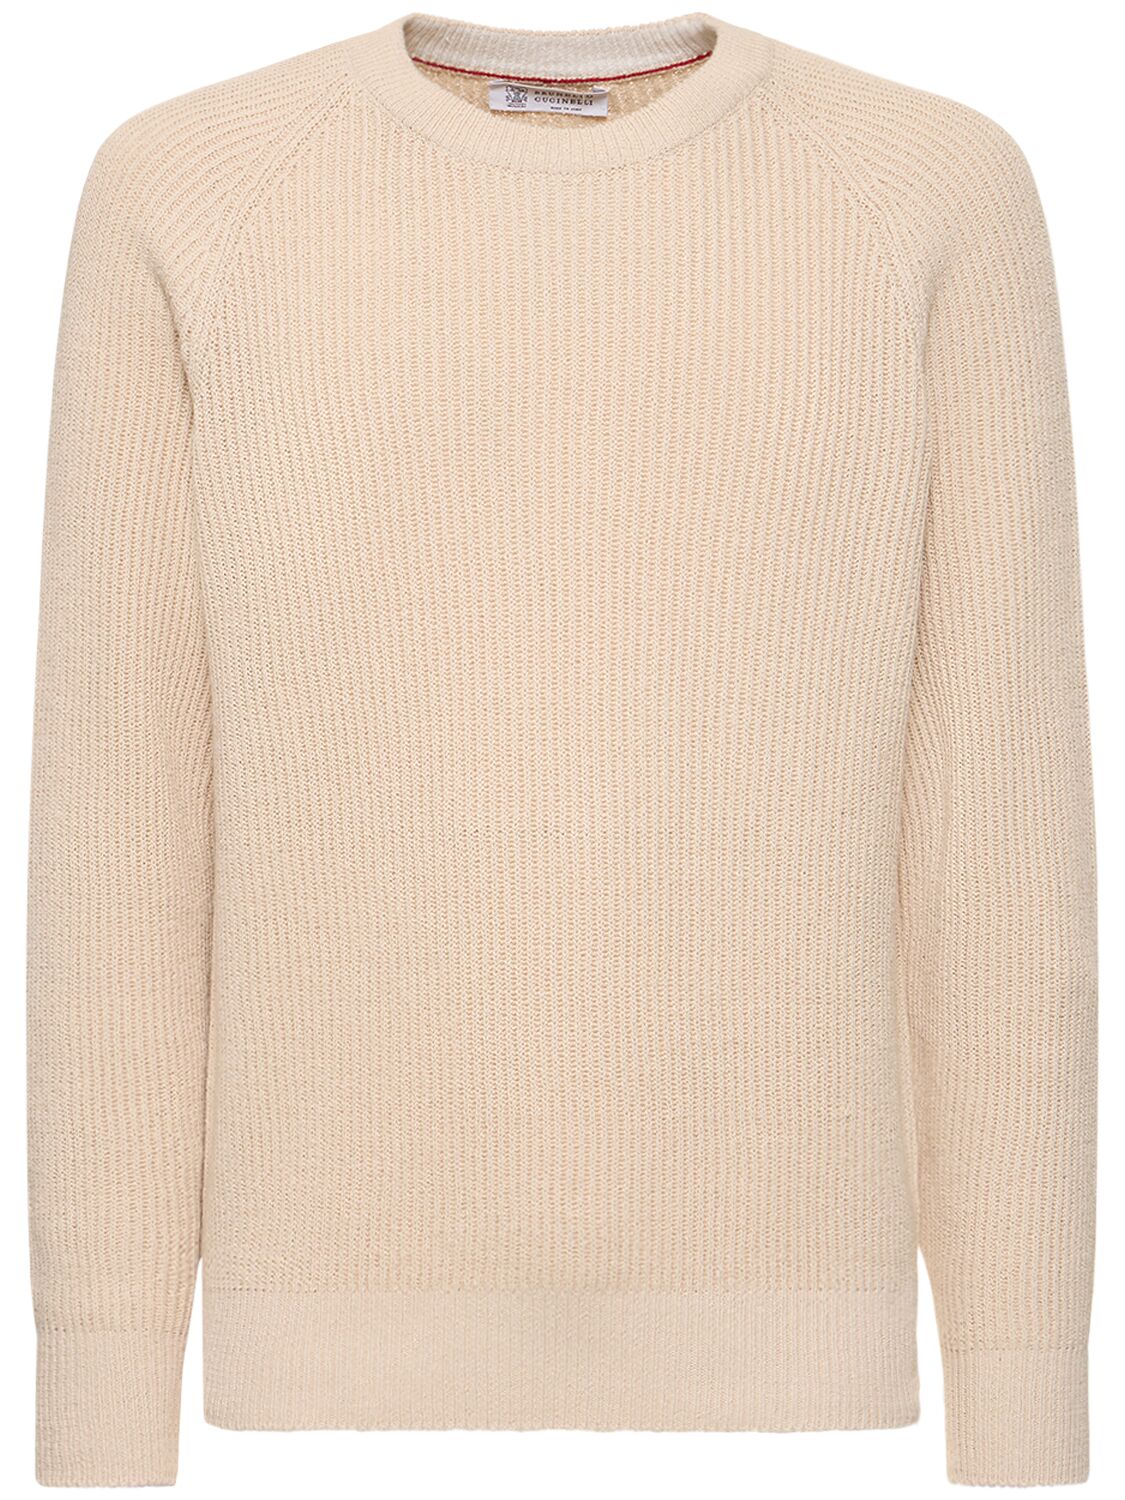 Brunello Cucinelli Cotton Knit Crewneck Sweater In Corda